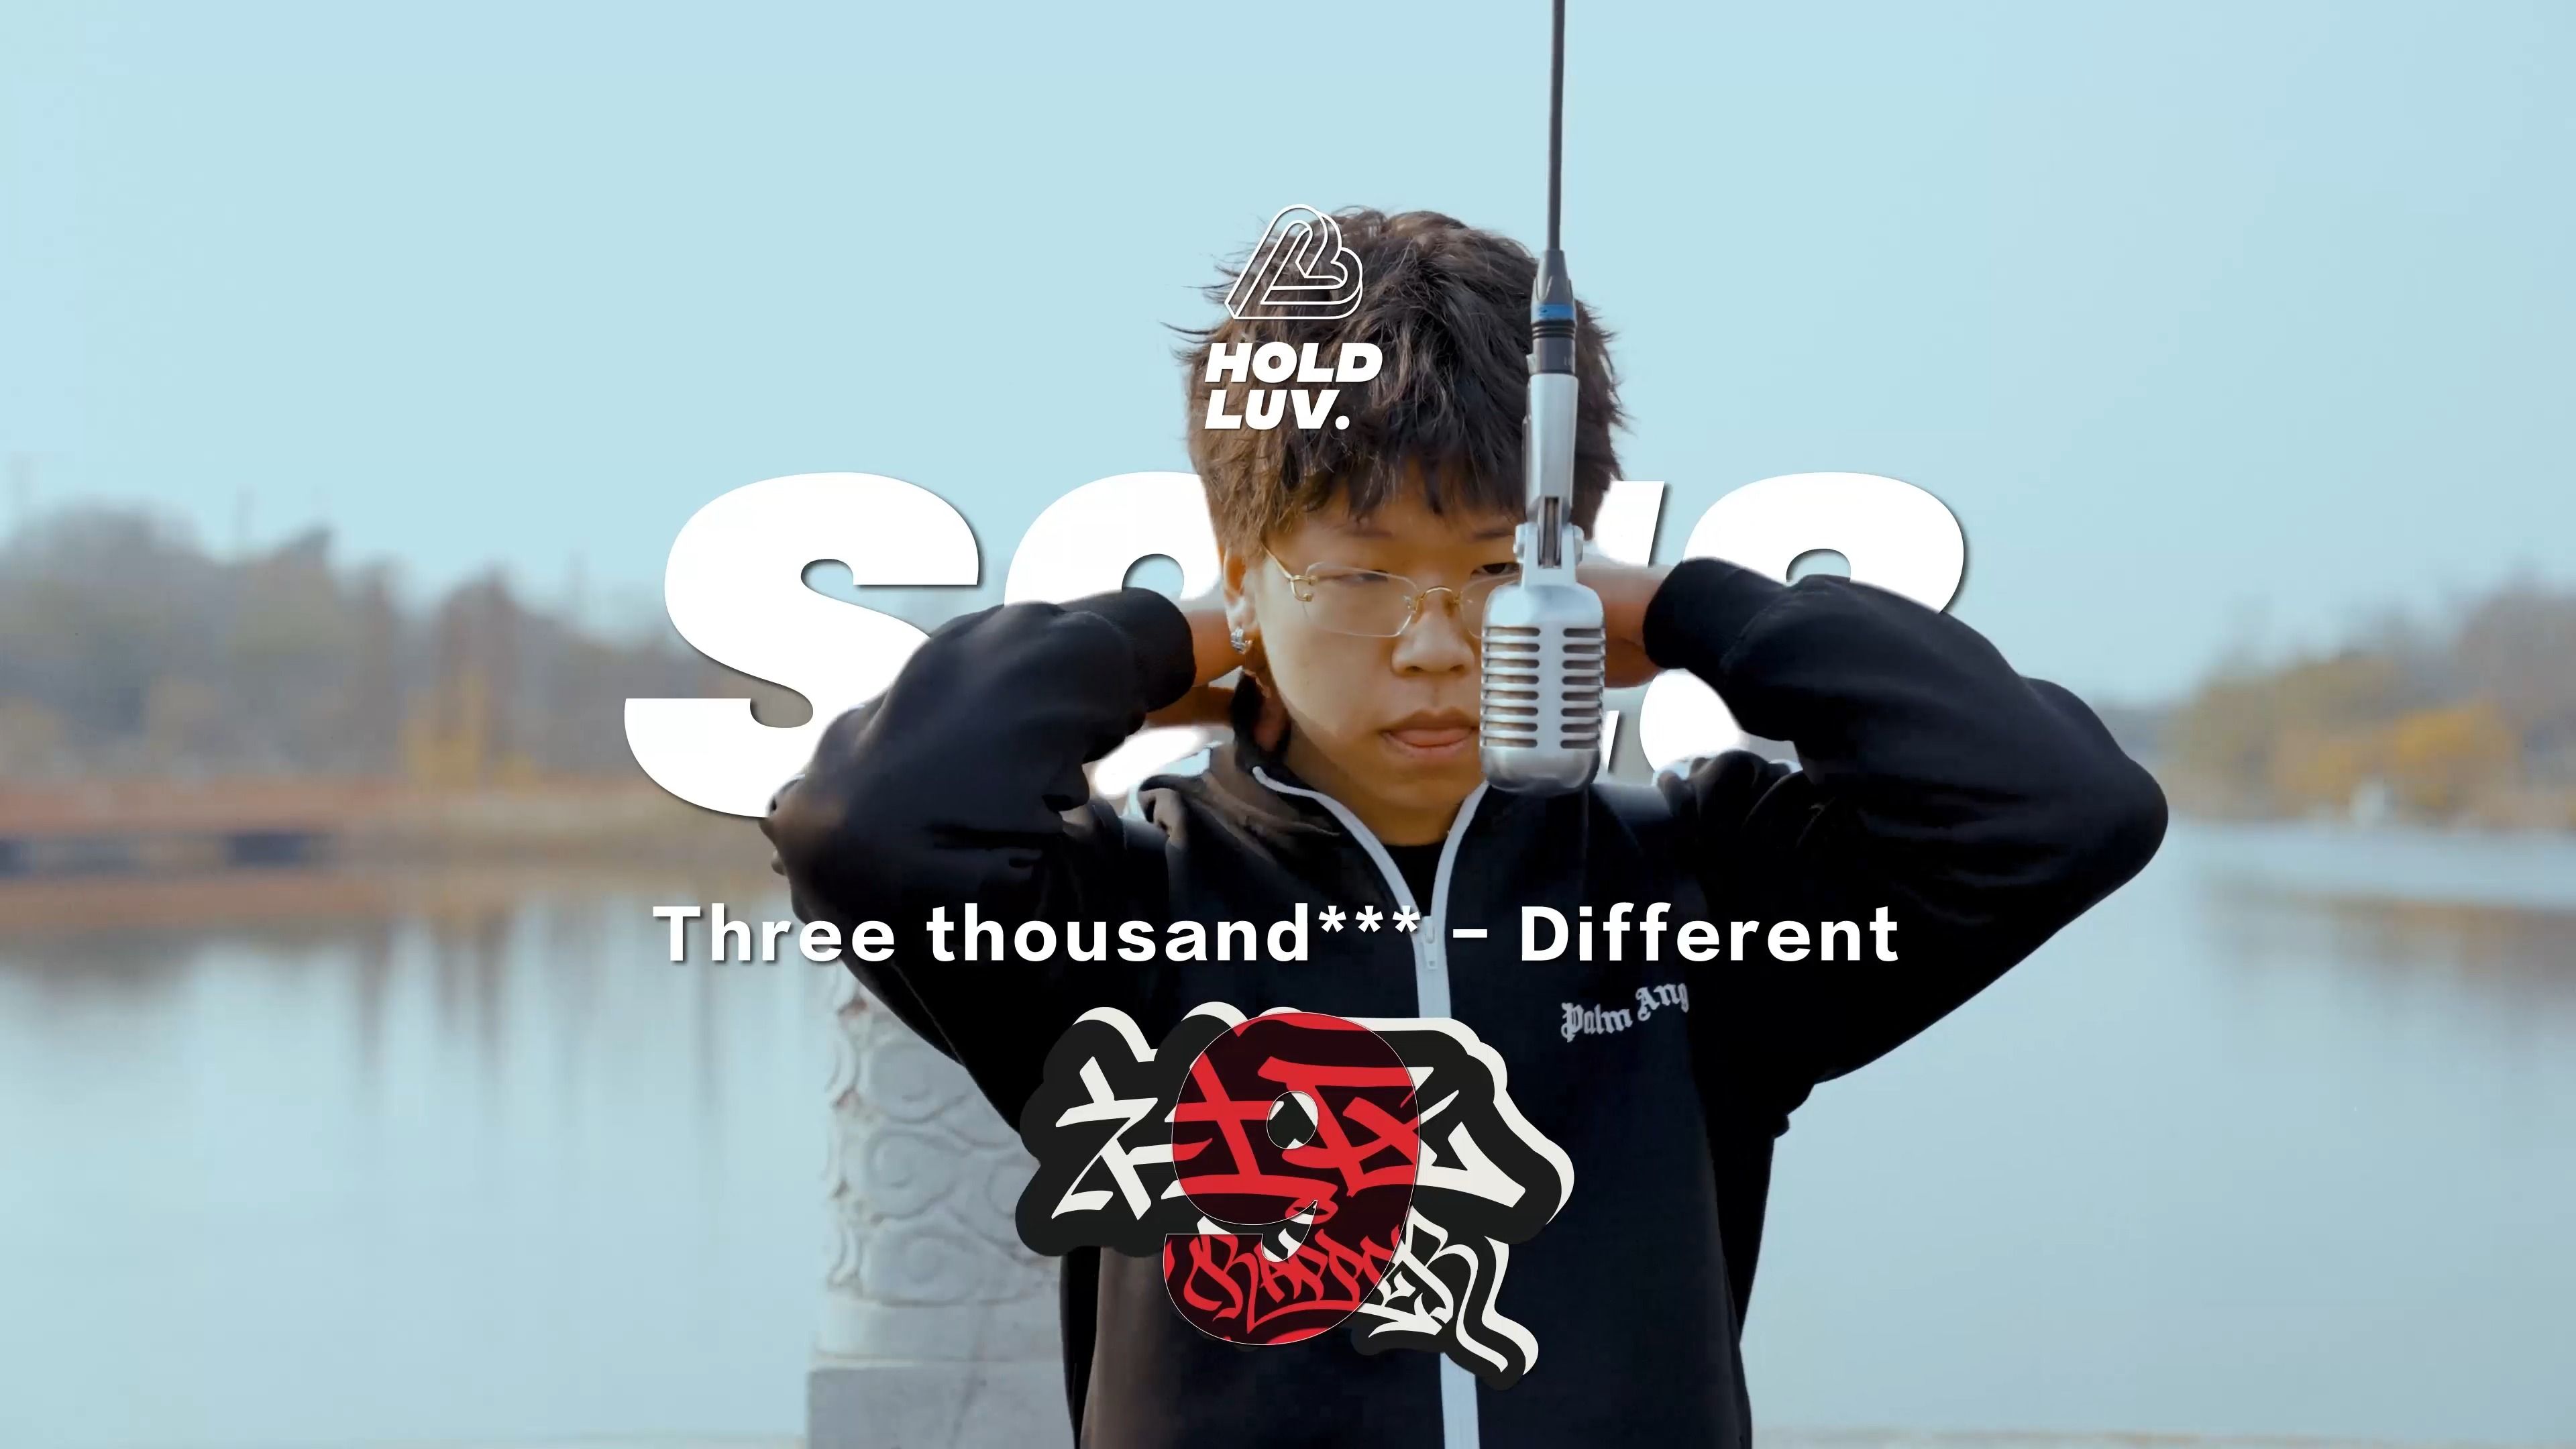 【社区rapper】- S9E8 Three thousand***｜Different